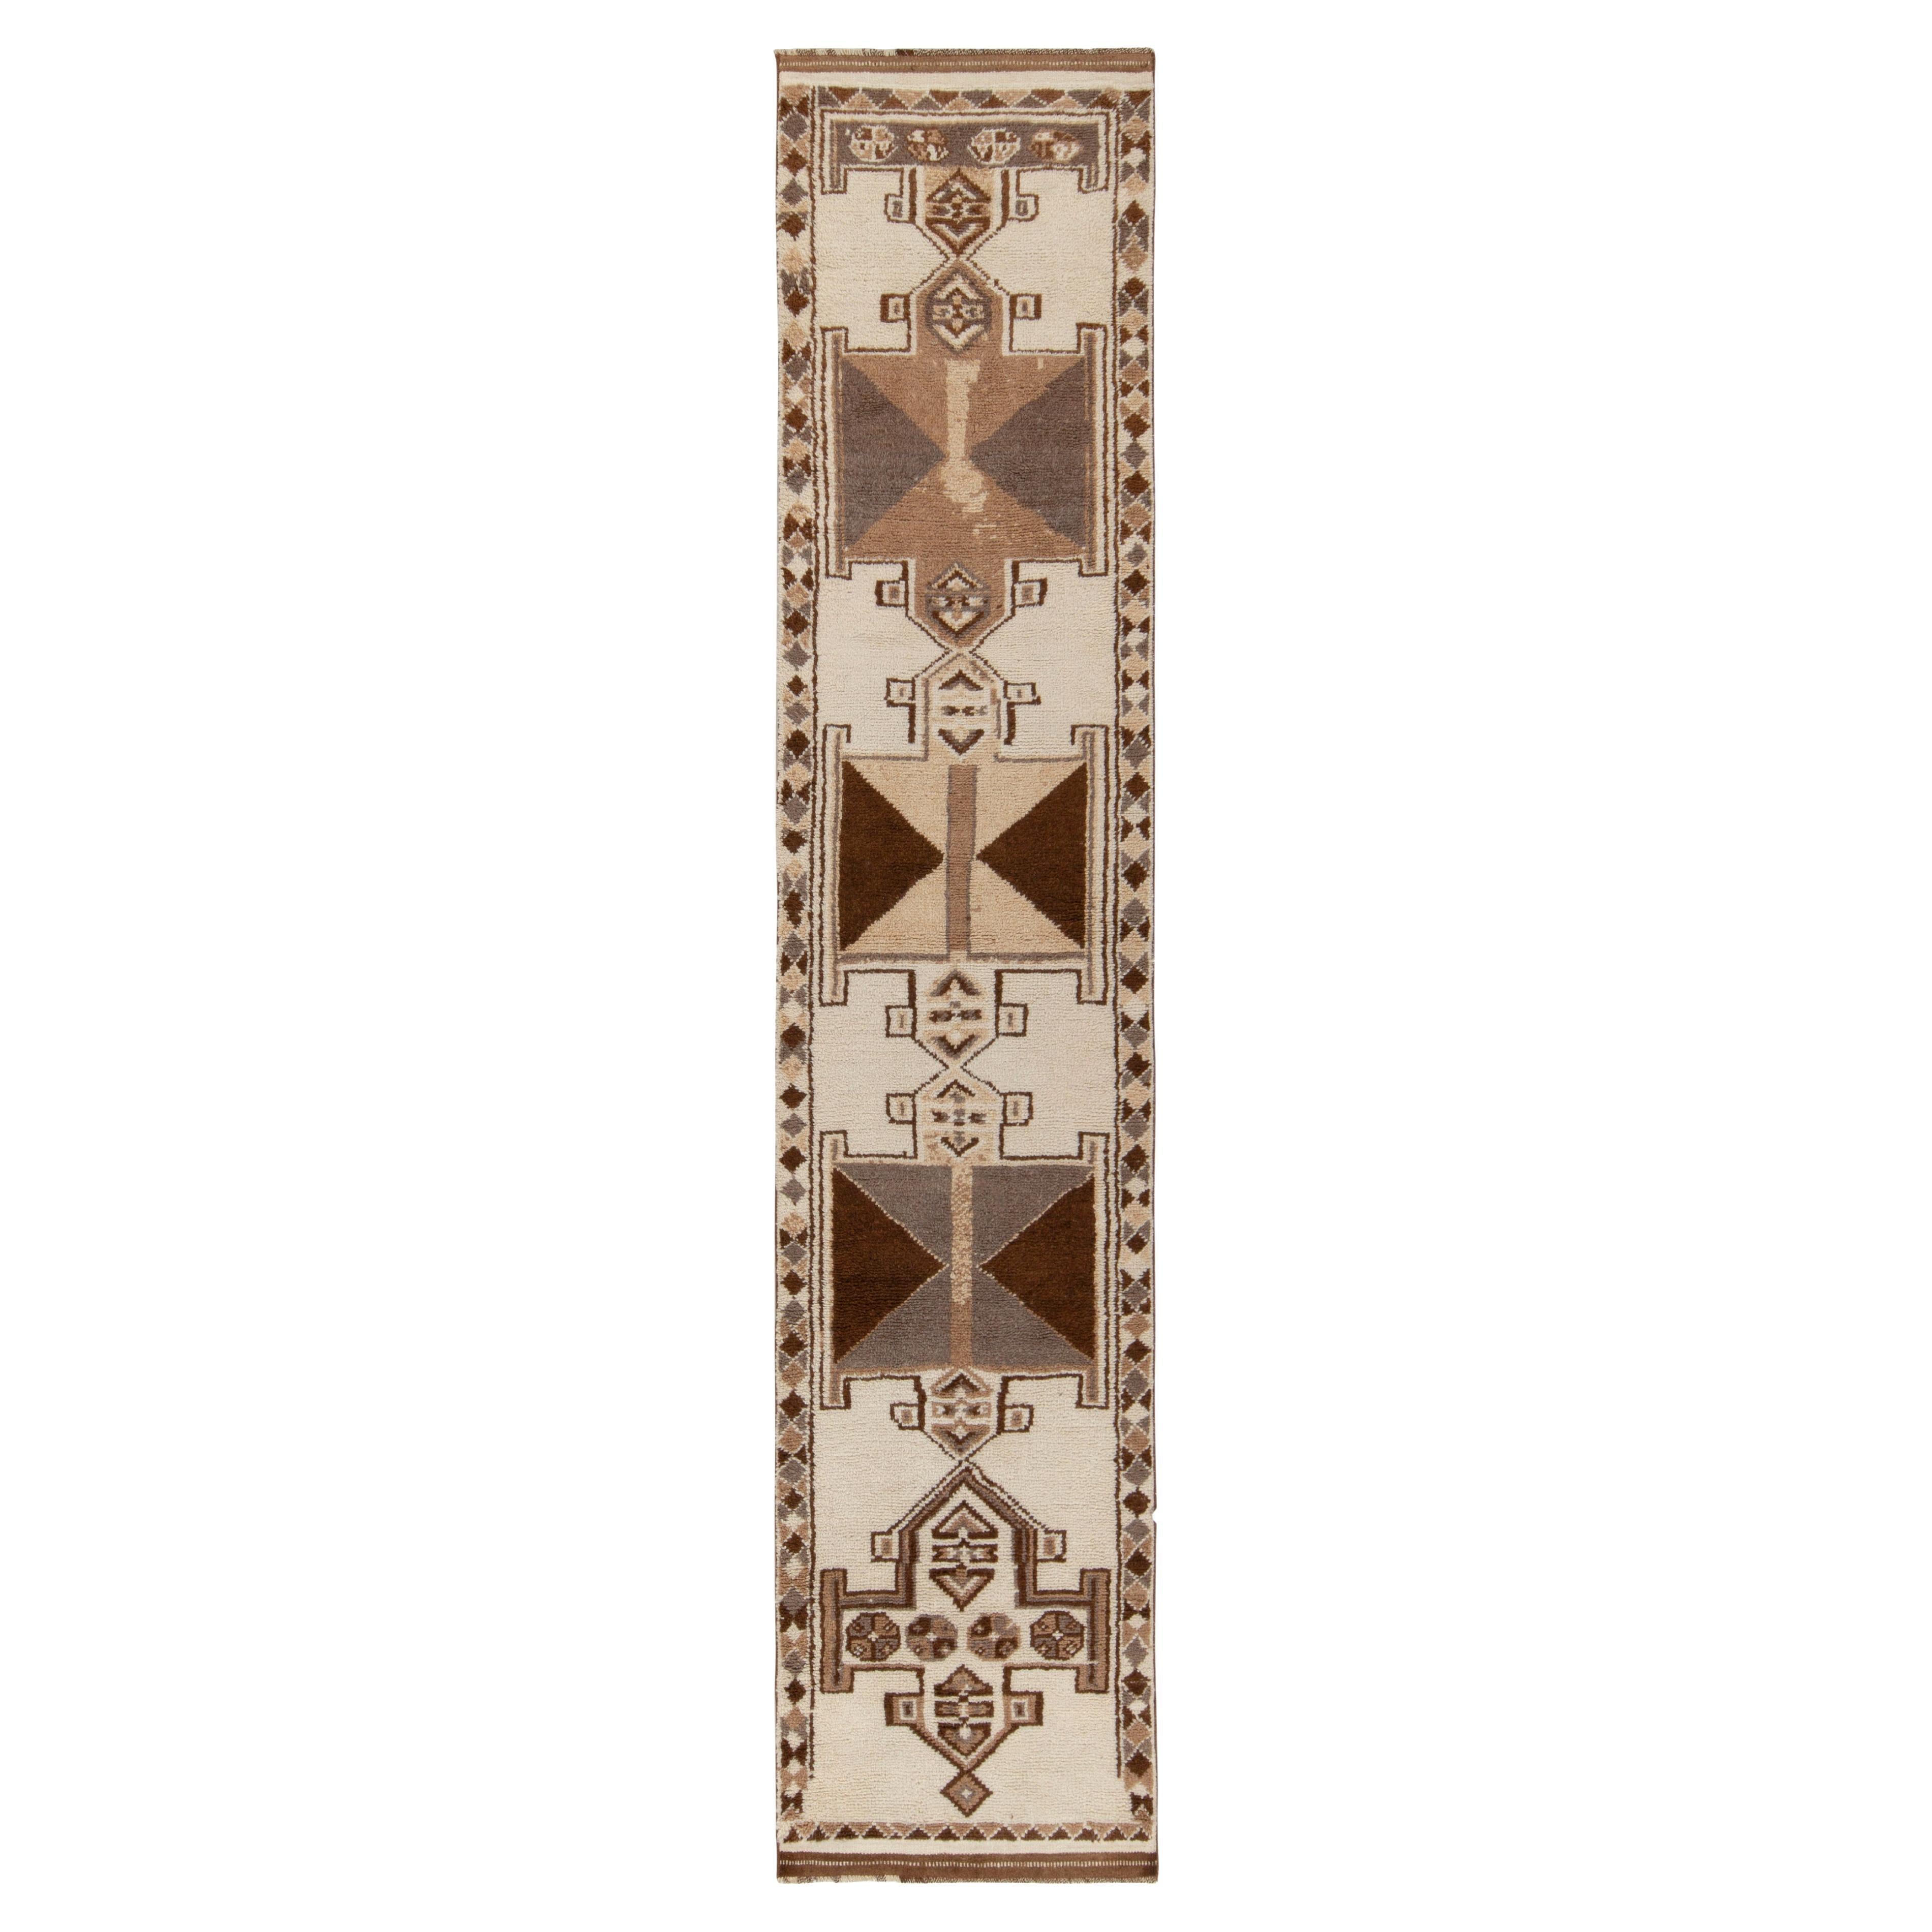 Vintage Tribal-Läufer Vintage in Weiß & Beige-Braun mit geometrischem Muster, von Teppich & Kelim